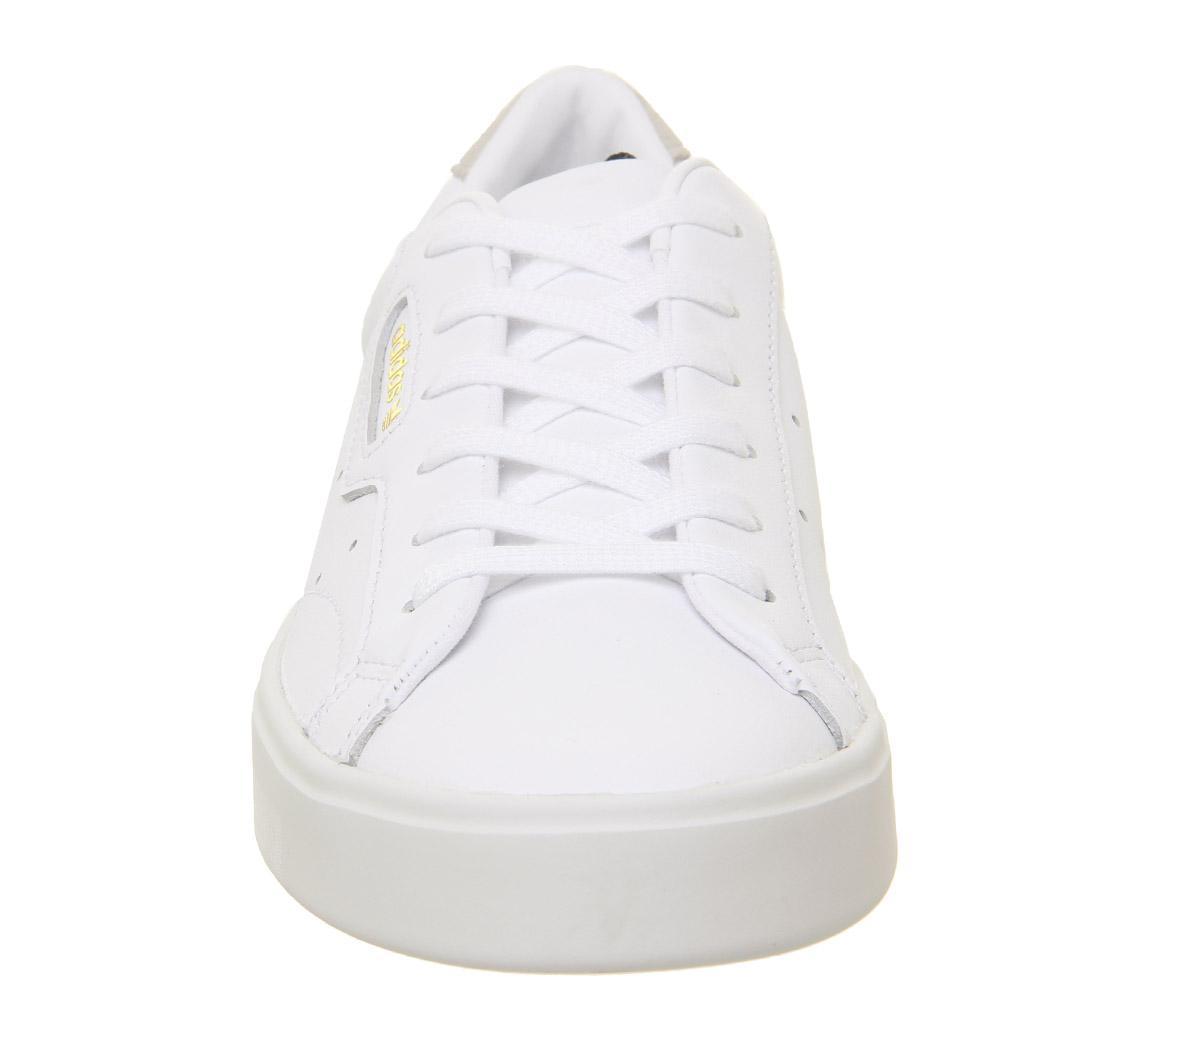 adidas sleek trainers white white crystal white